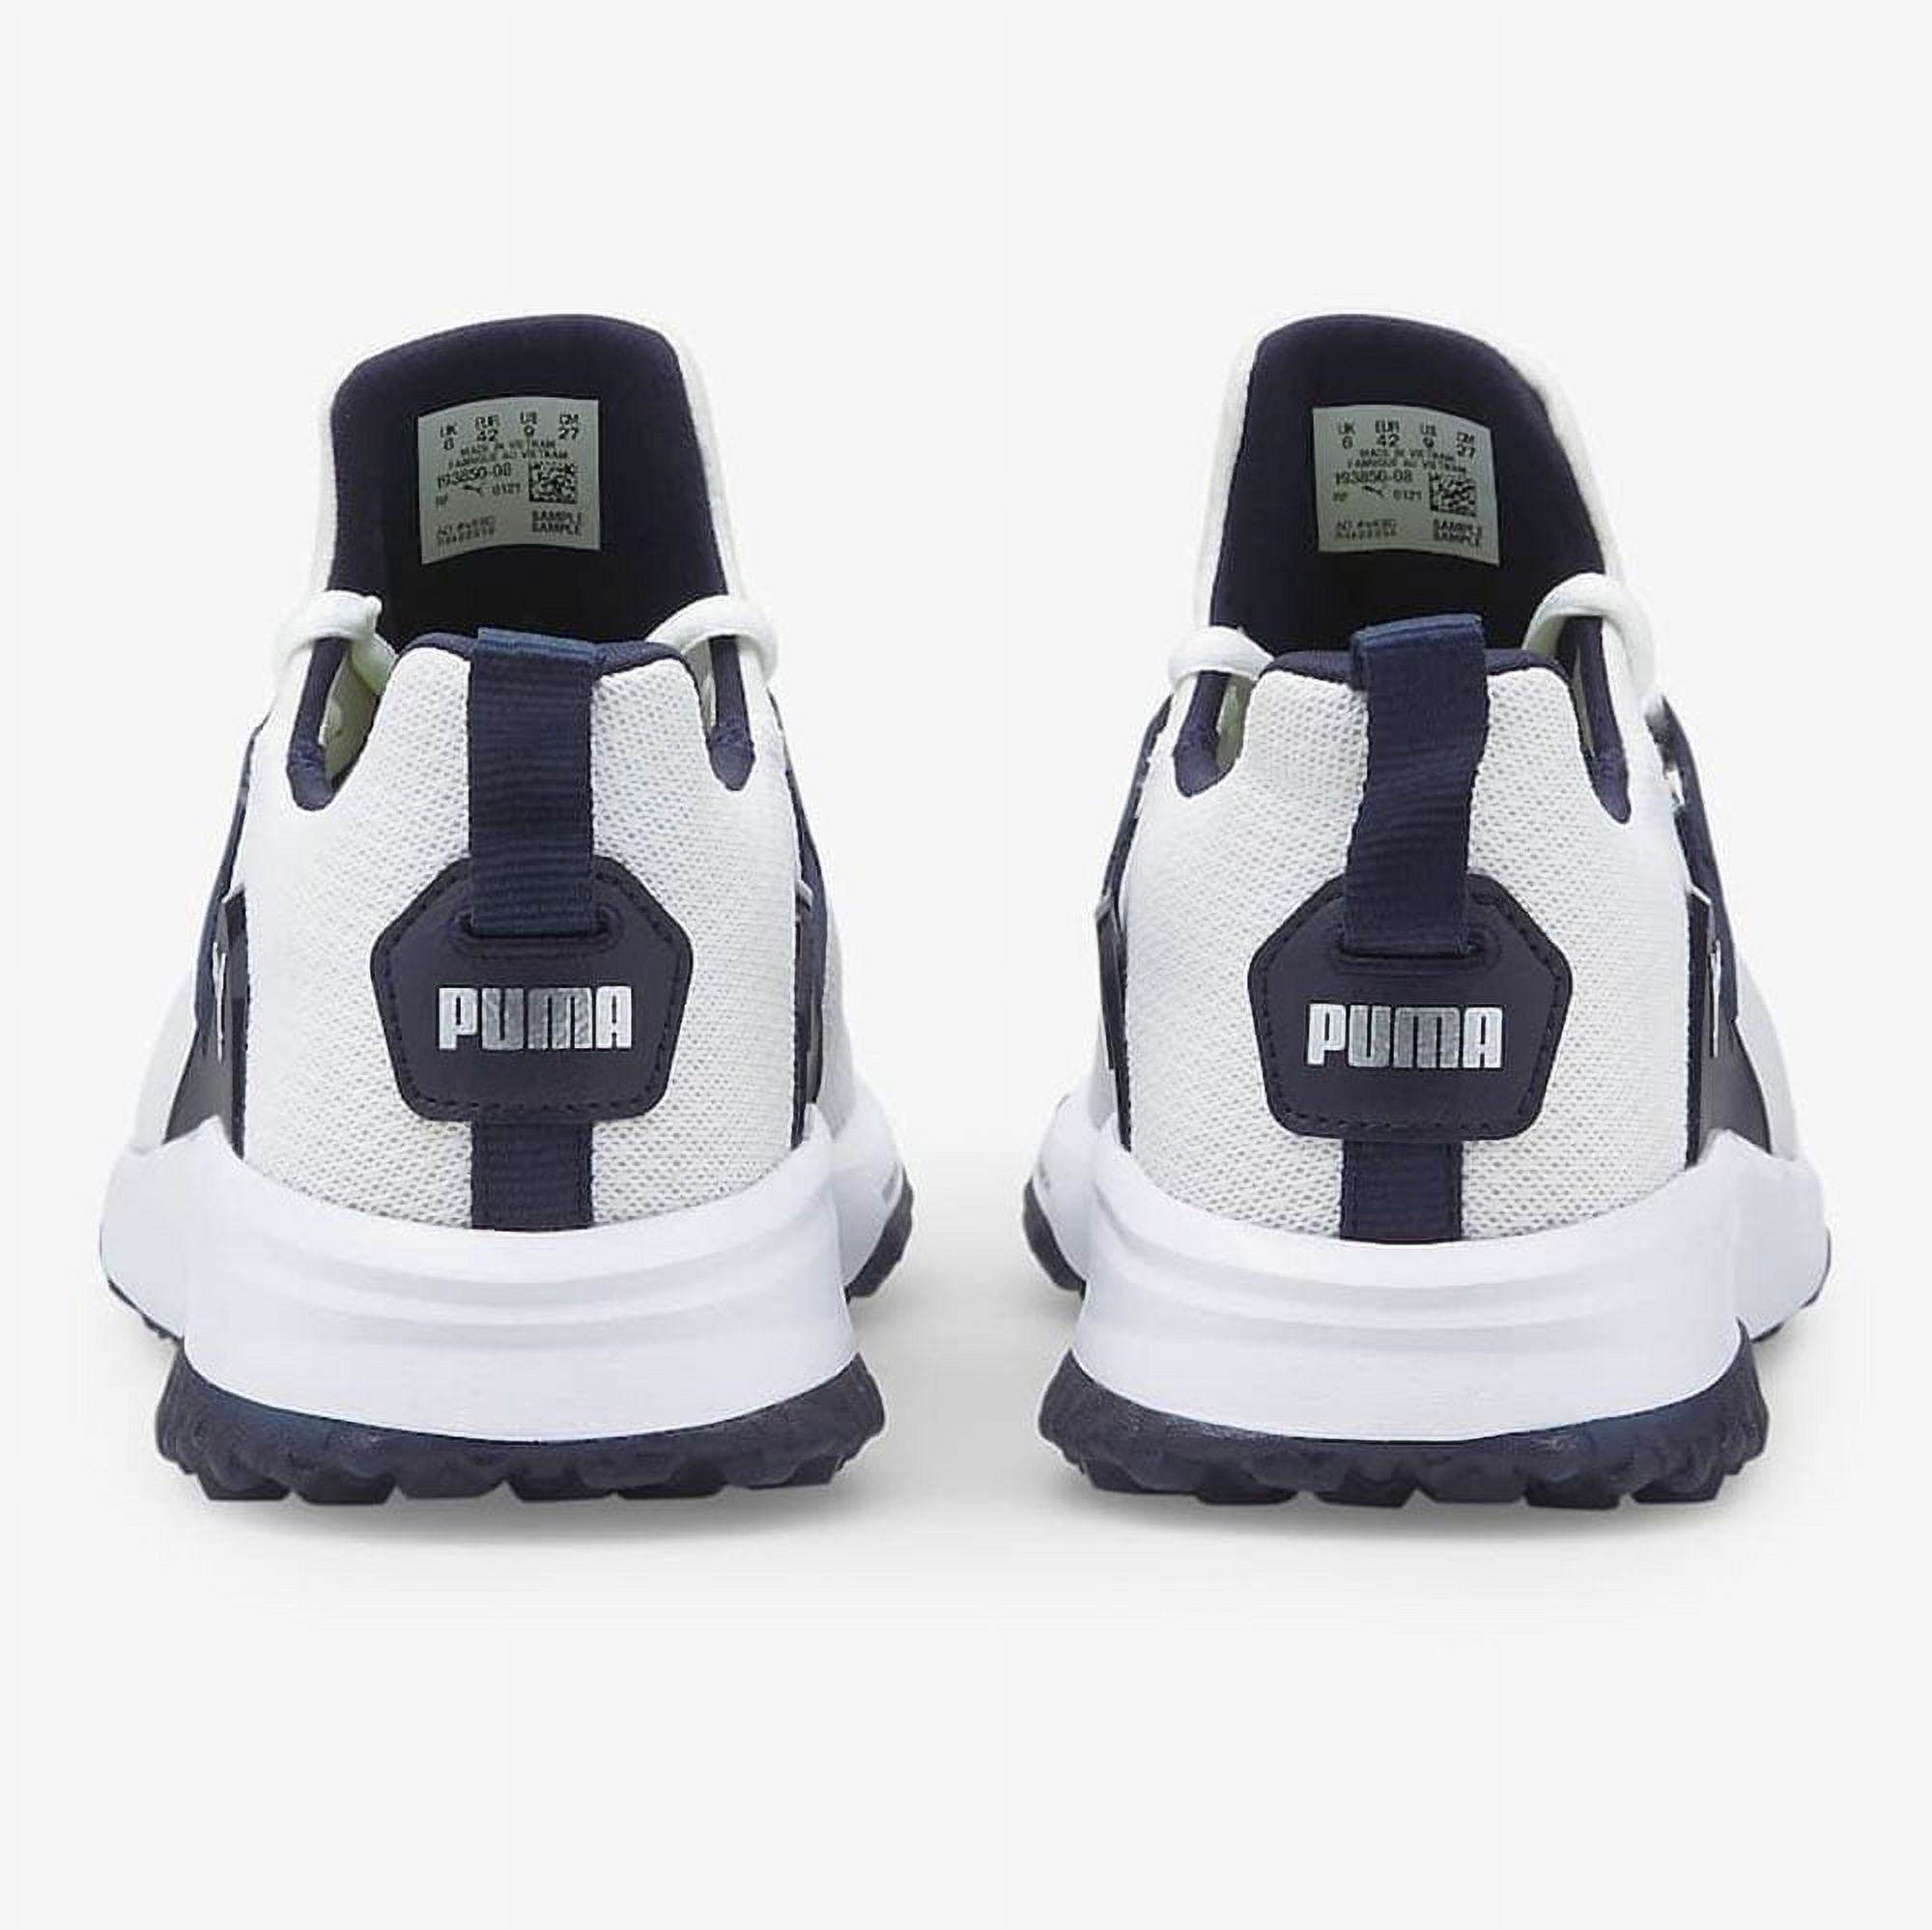 NEW Men's Puma Fusion Evo Spikeless Golf Shoes Puma White / Navy Blazer 11.5 M - image 3 of 3